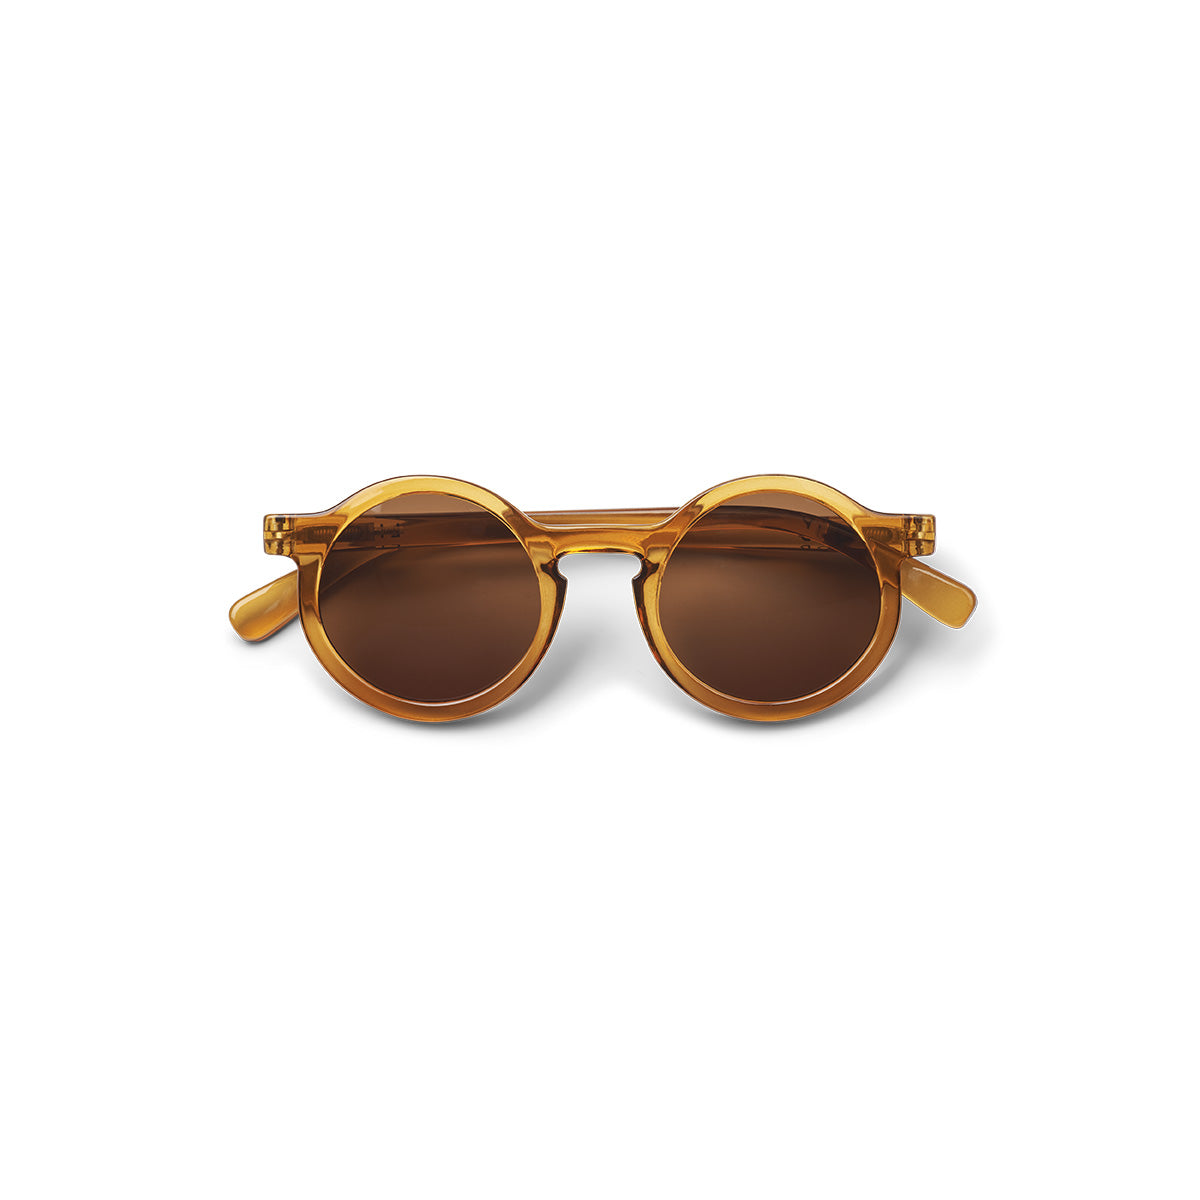 De Liewood darla zonnebril mustard is het perfecte accessoire voor jouw kindje tijdens de lente en zomer. Deze toffe zonnebril heeft dankzij de ronde glazen een retro en speelse look. VanZus.